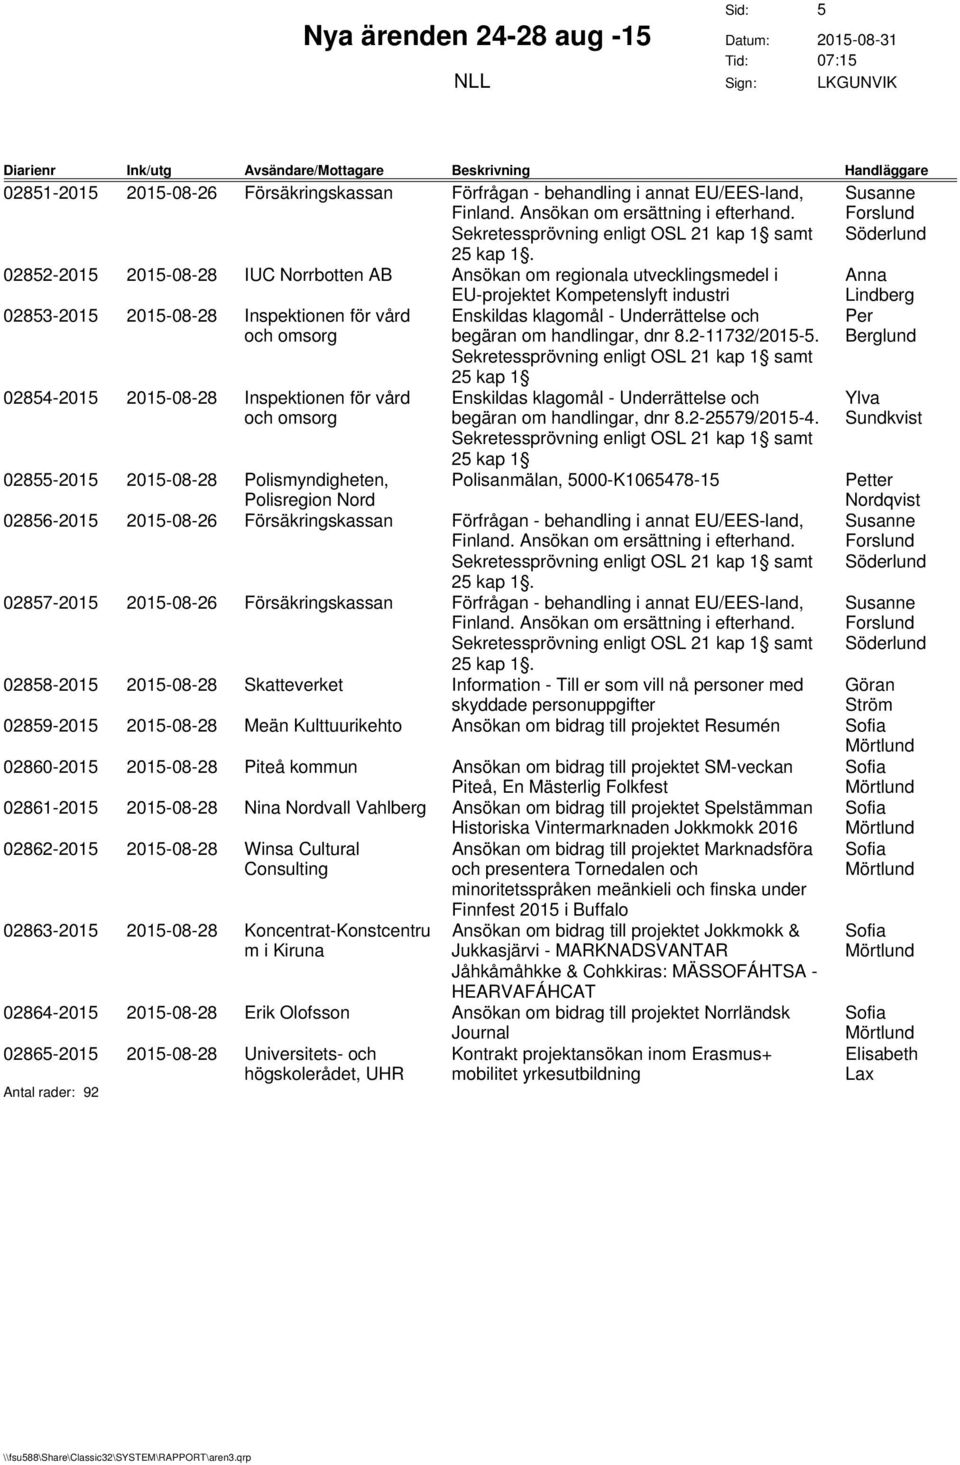 02854-2015 2015-08-28 Inspektionen för vård Enskildas klagomål - Underrättelse och begäran om handlingar, dnr 8.2-25579/2015-4.